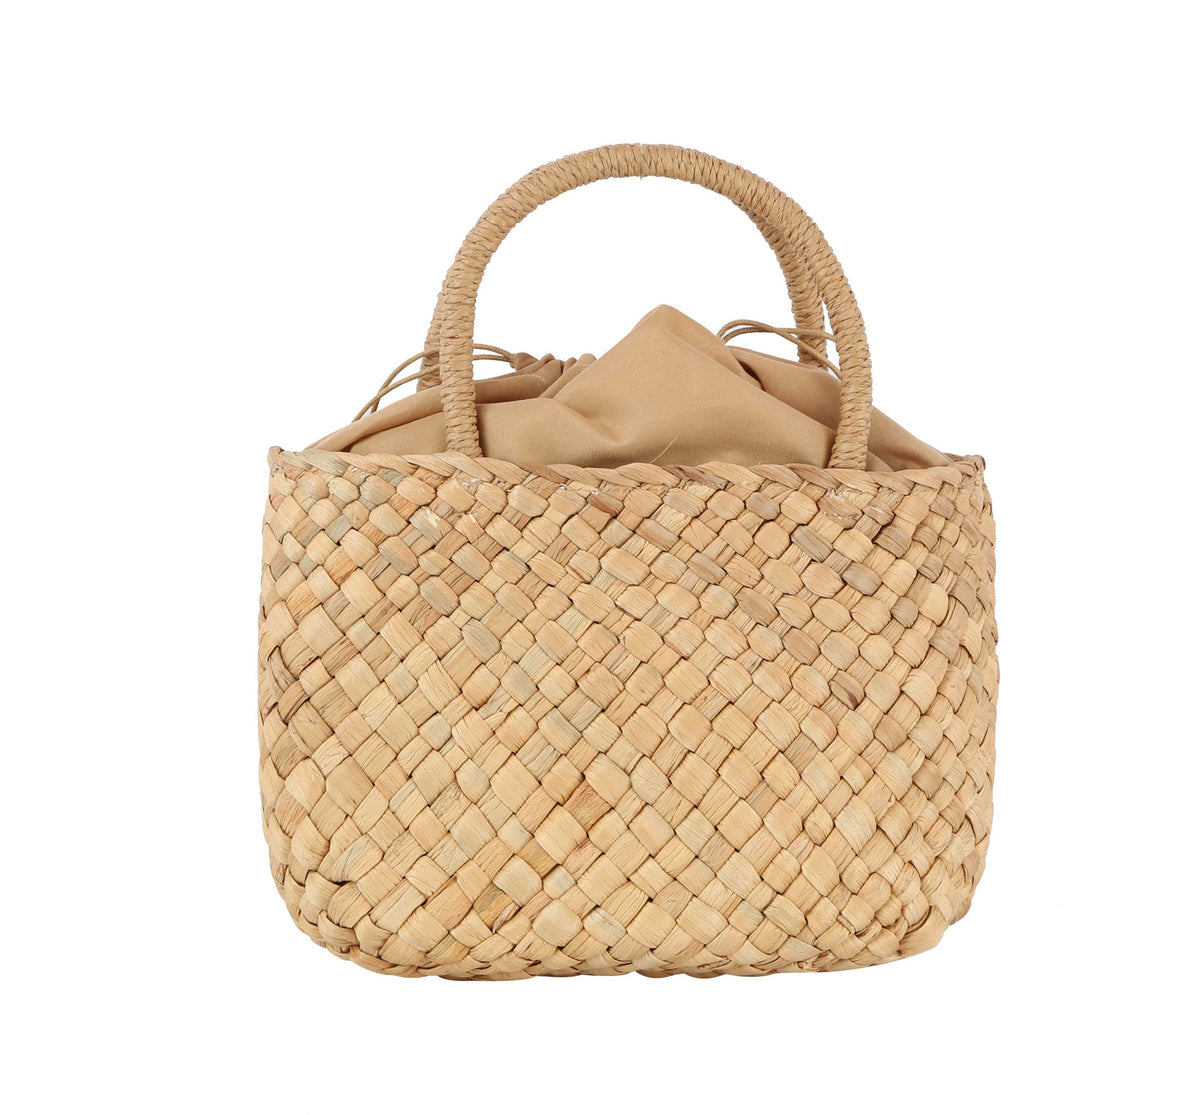 Weaved basket tote bag